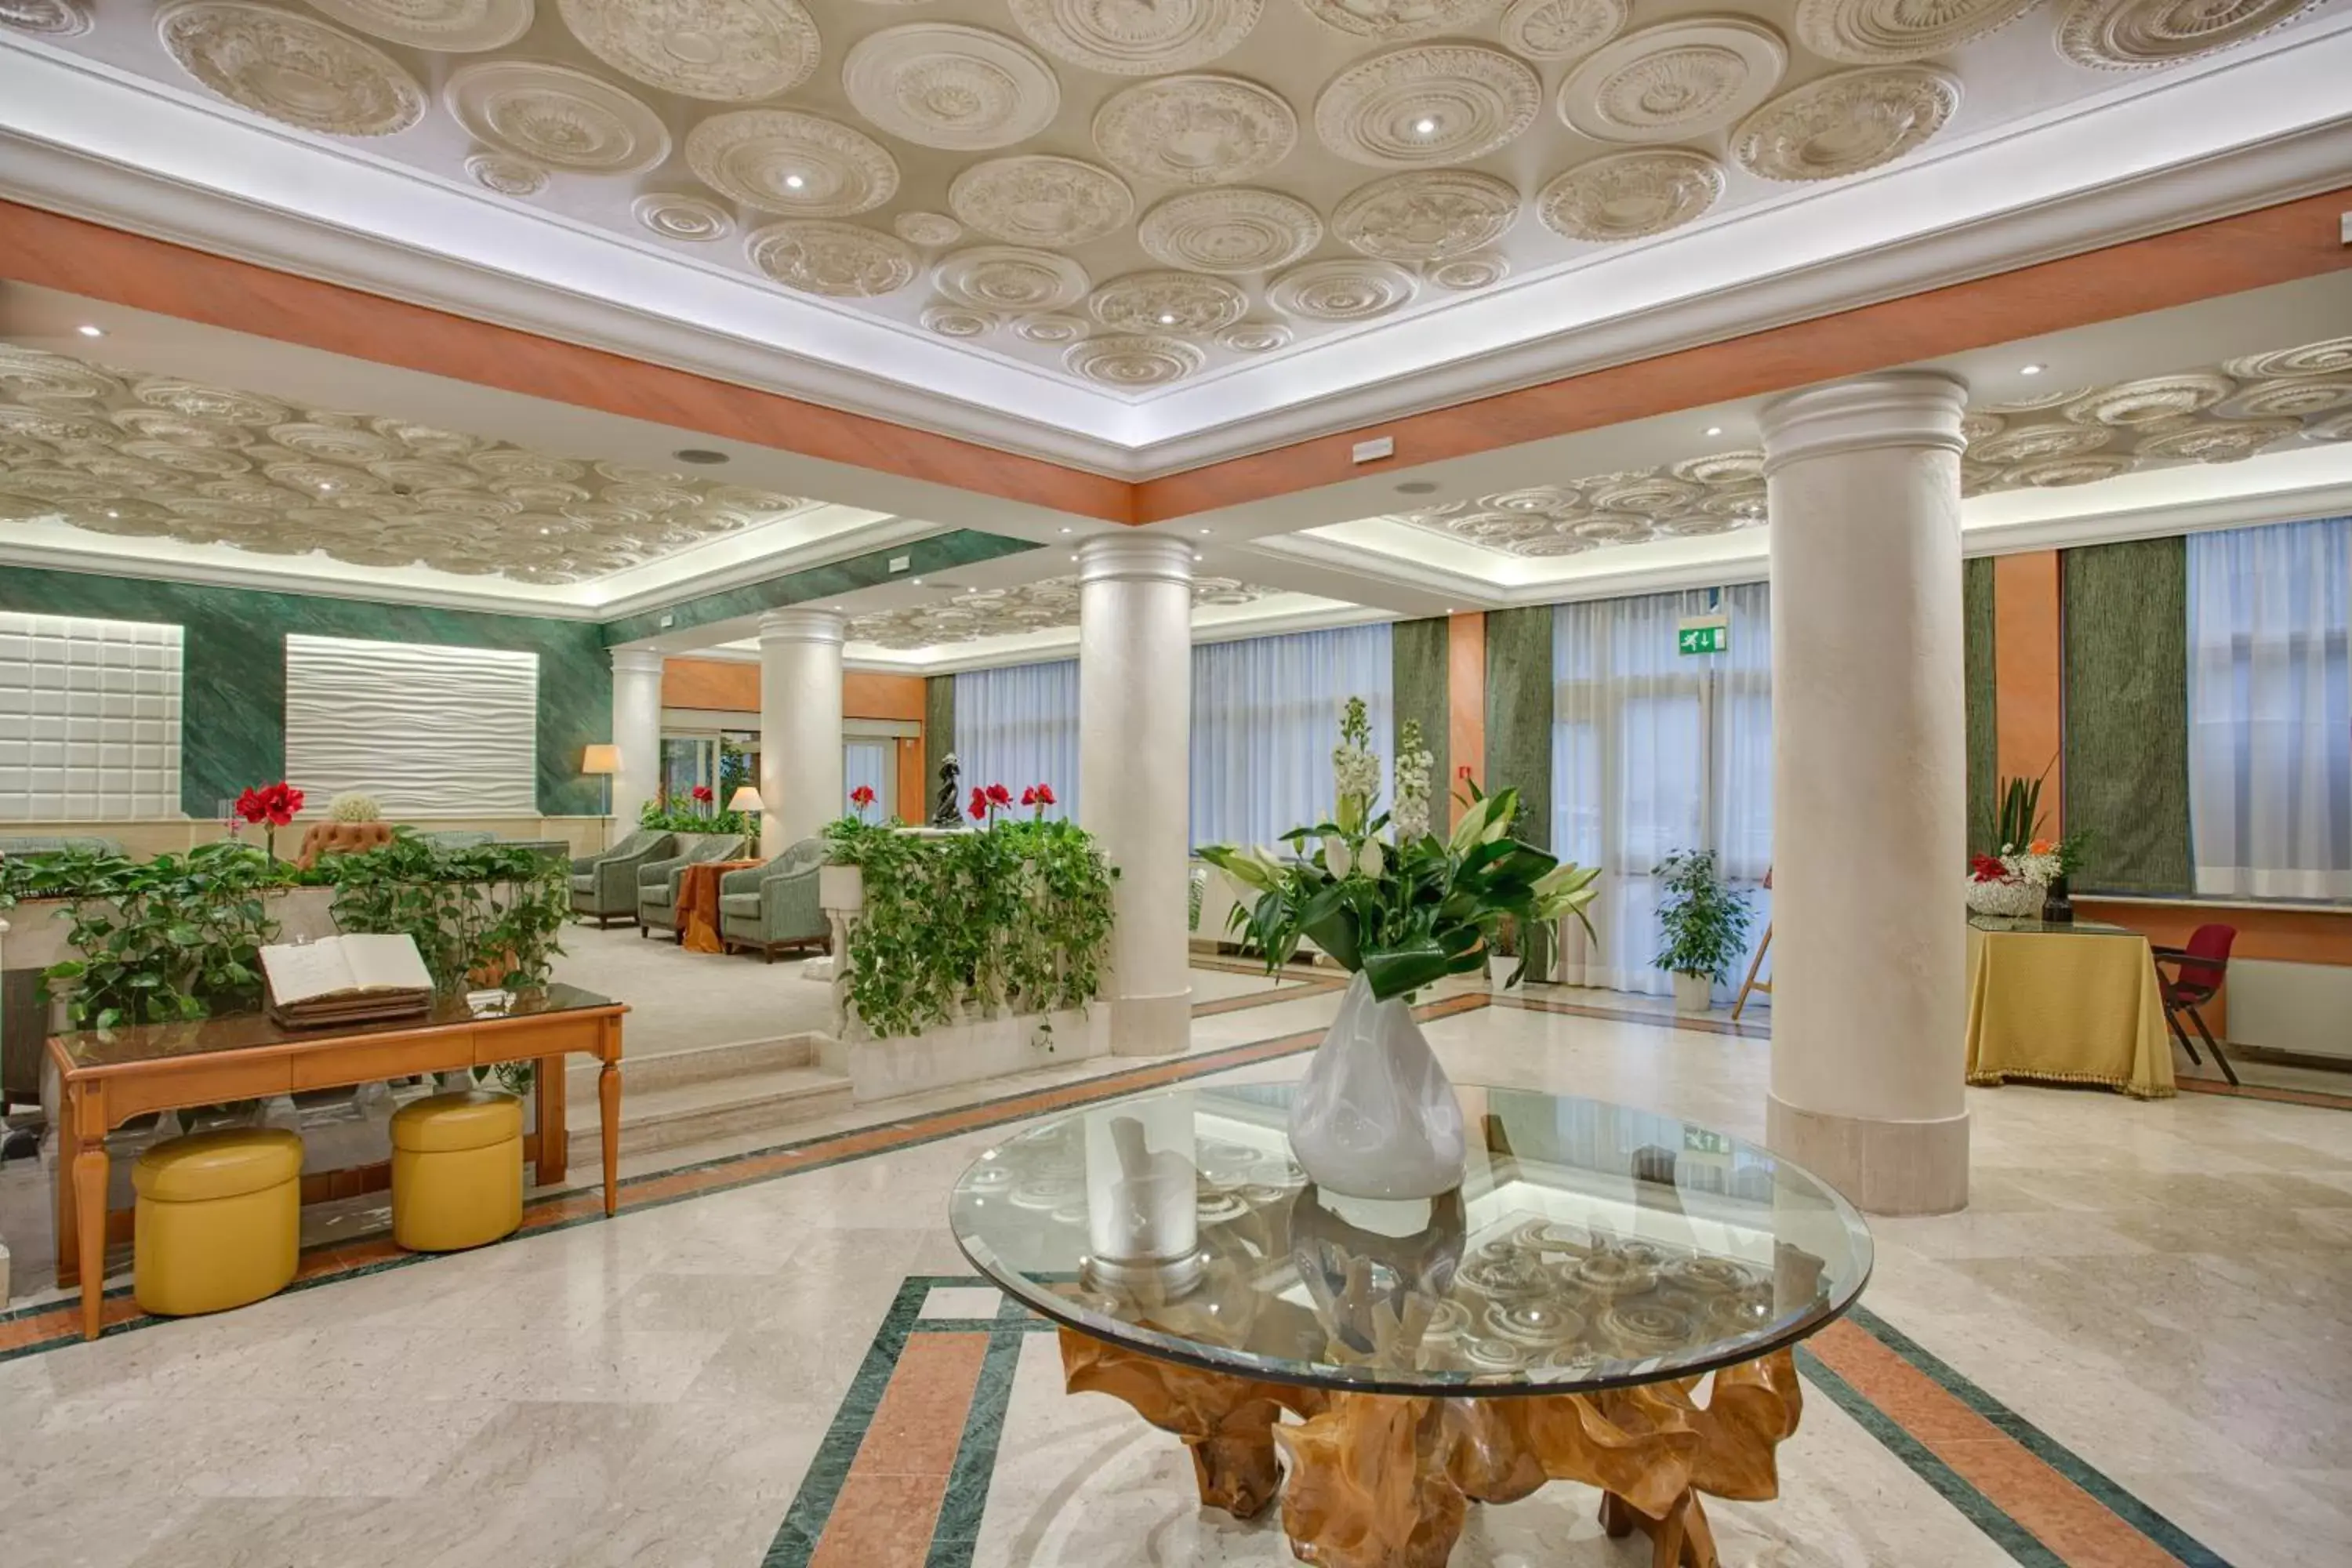 Lobby or reception, Lobby/Reception in Grand Hotel Adriatico